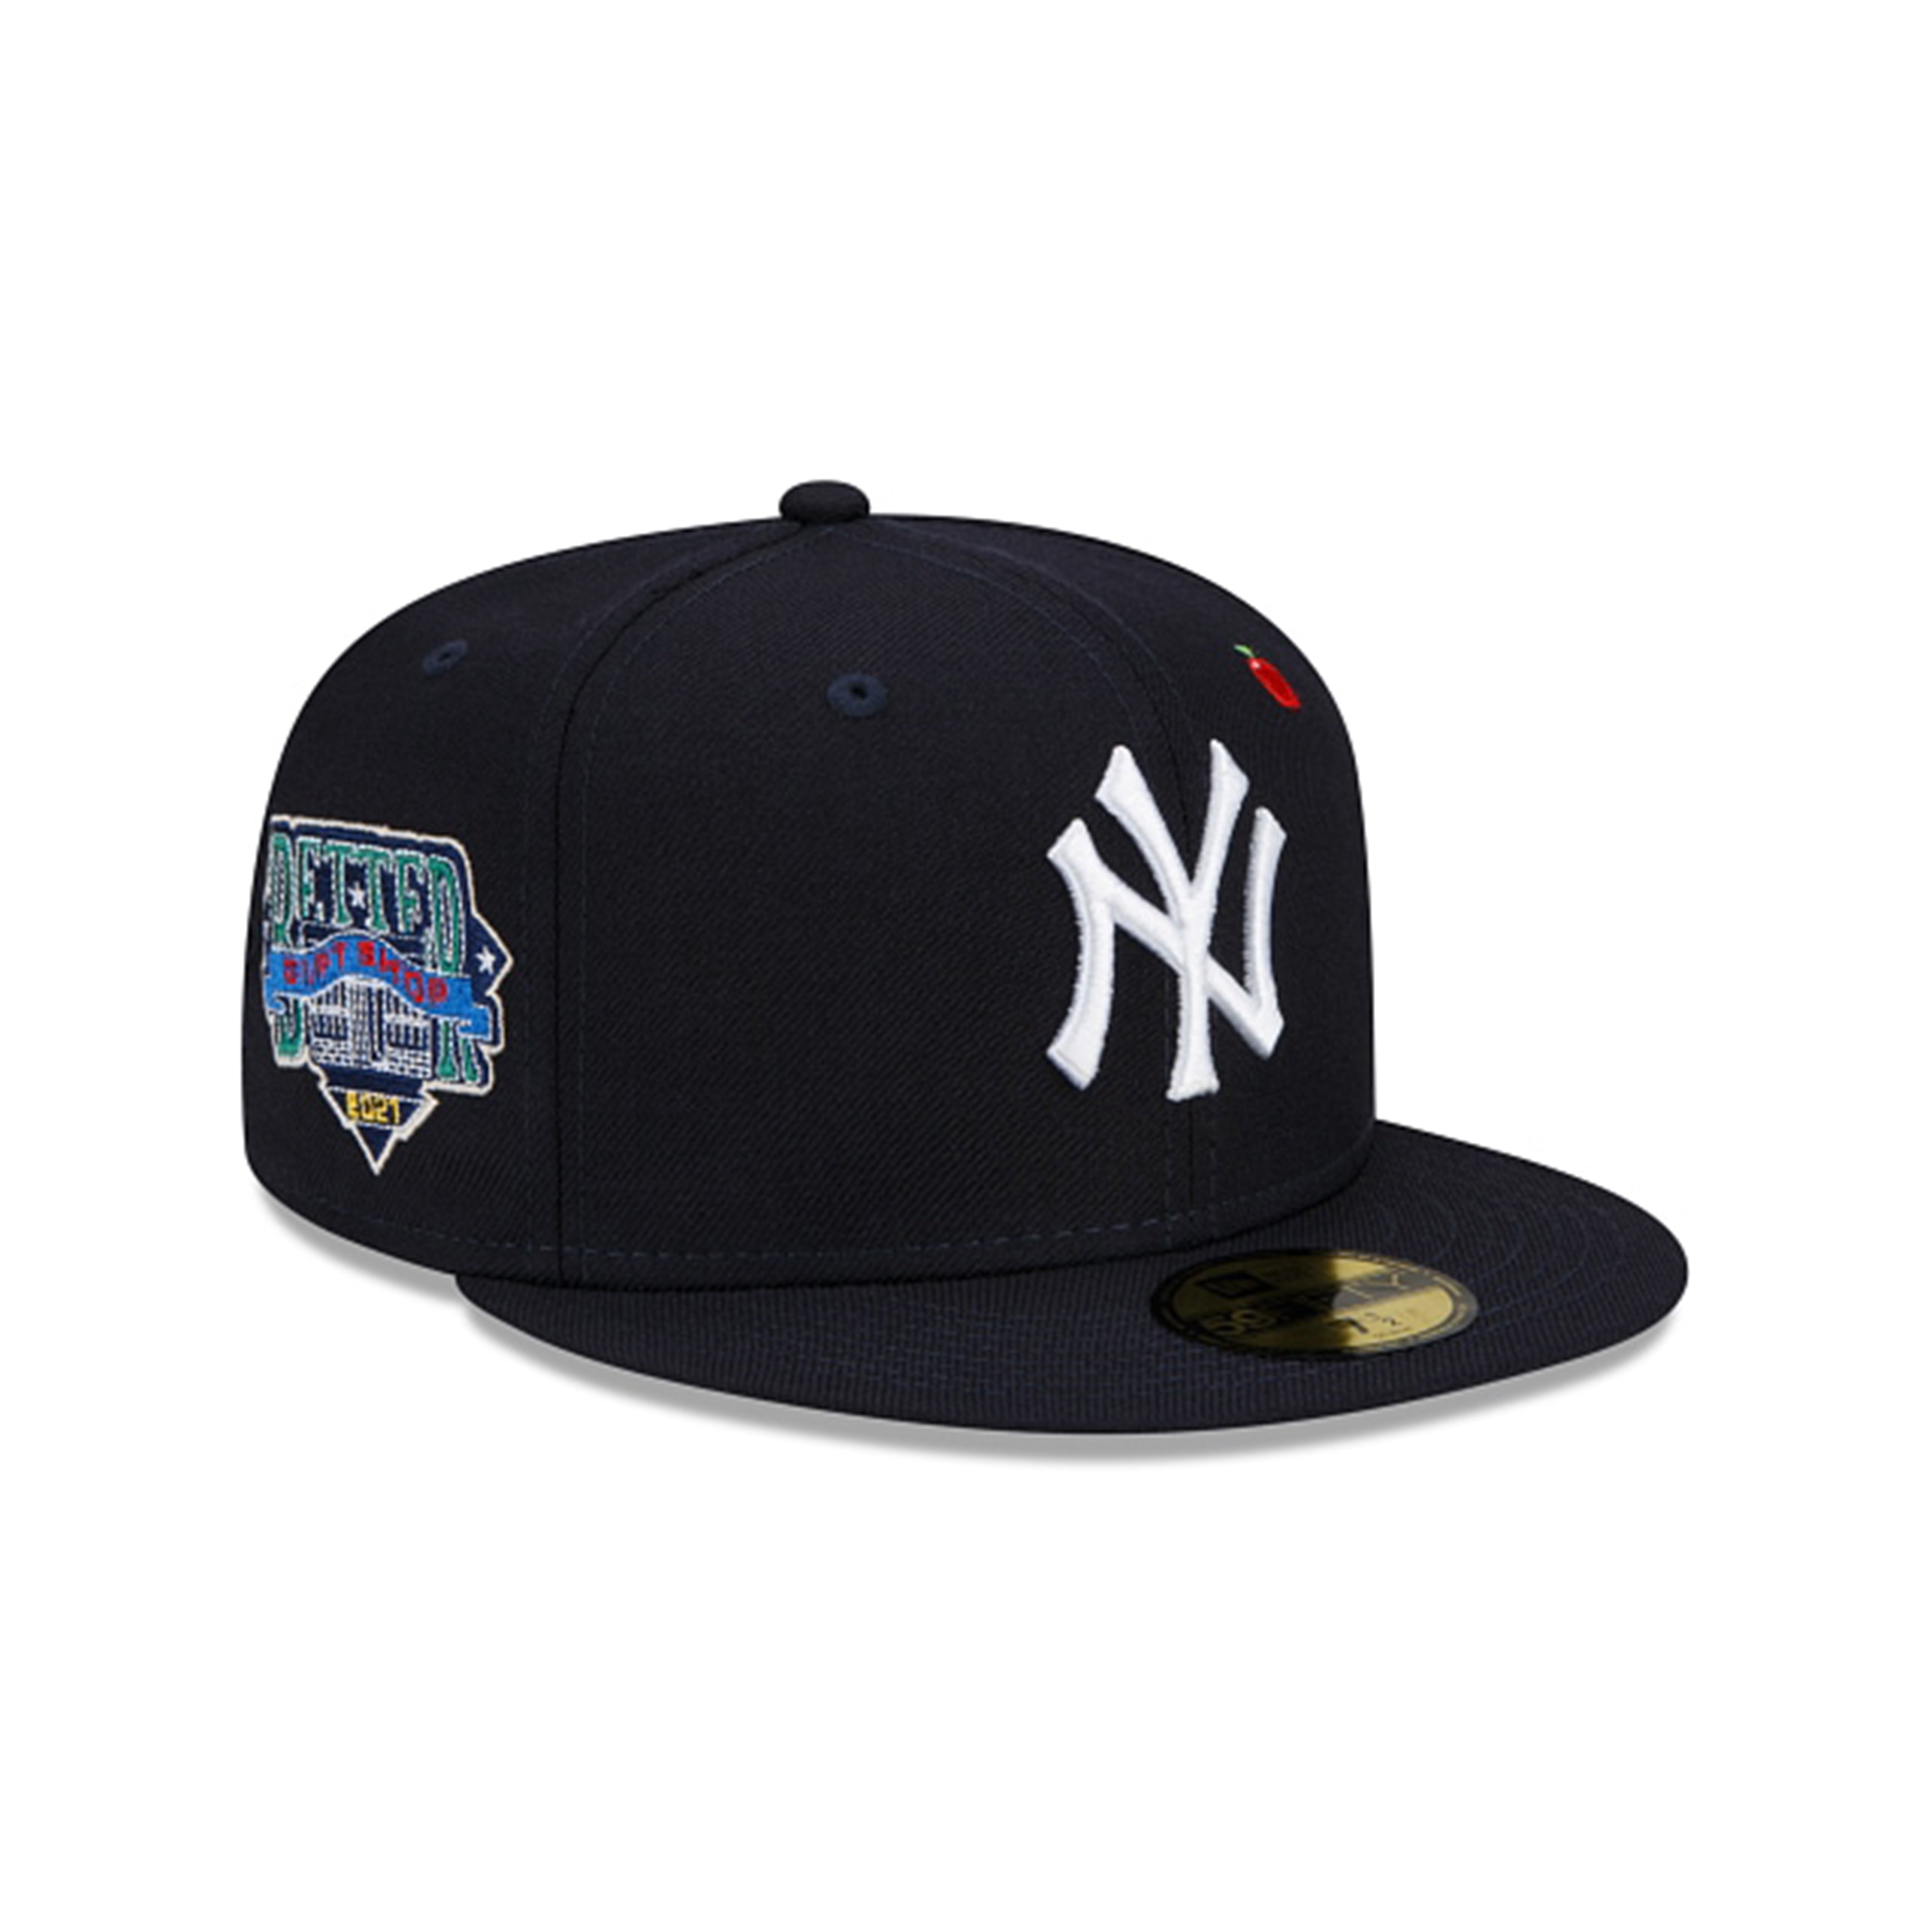 Better™ Gift Shop - MLB 